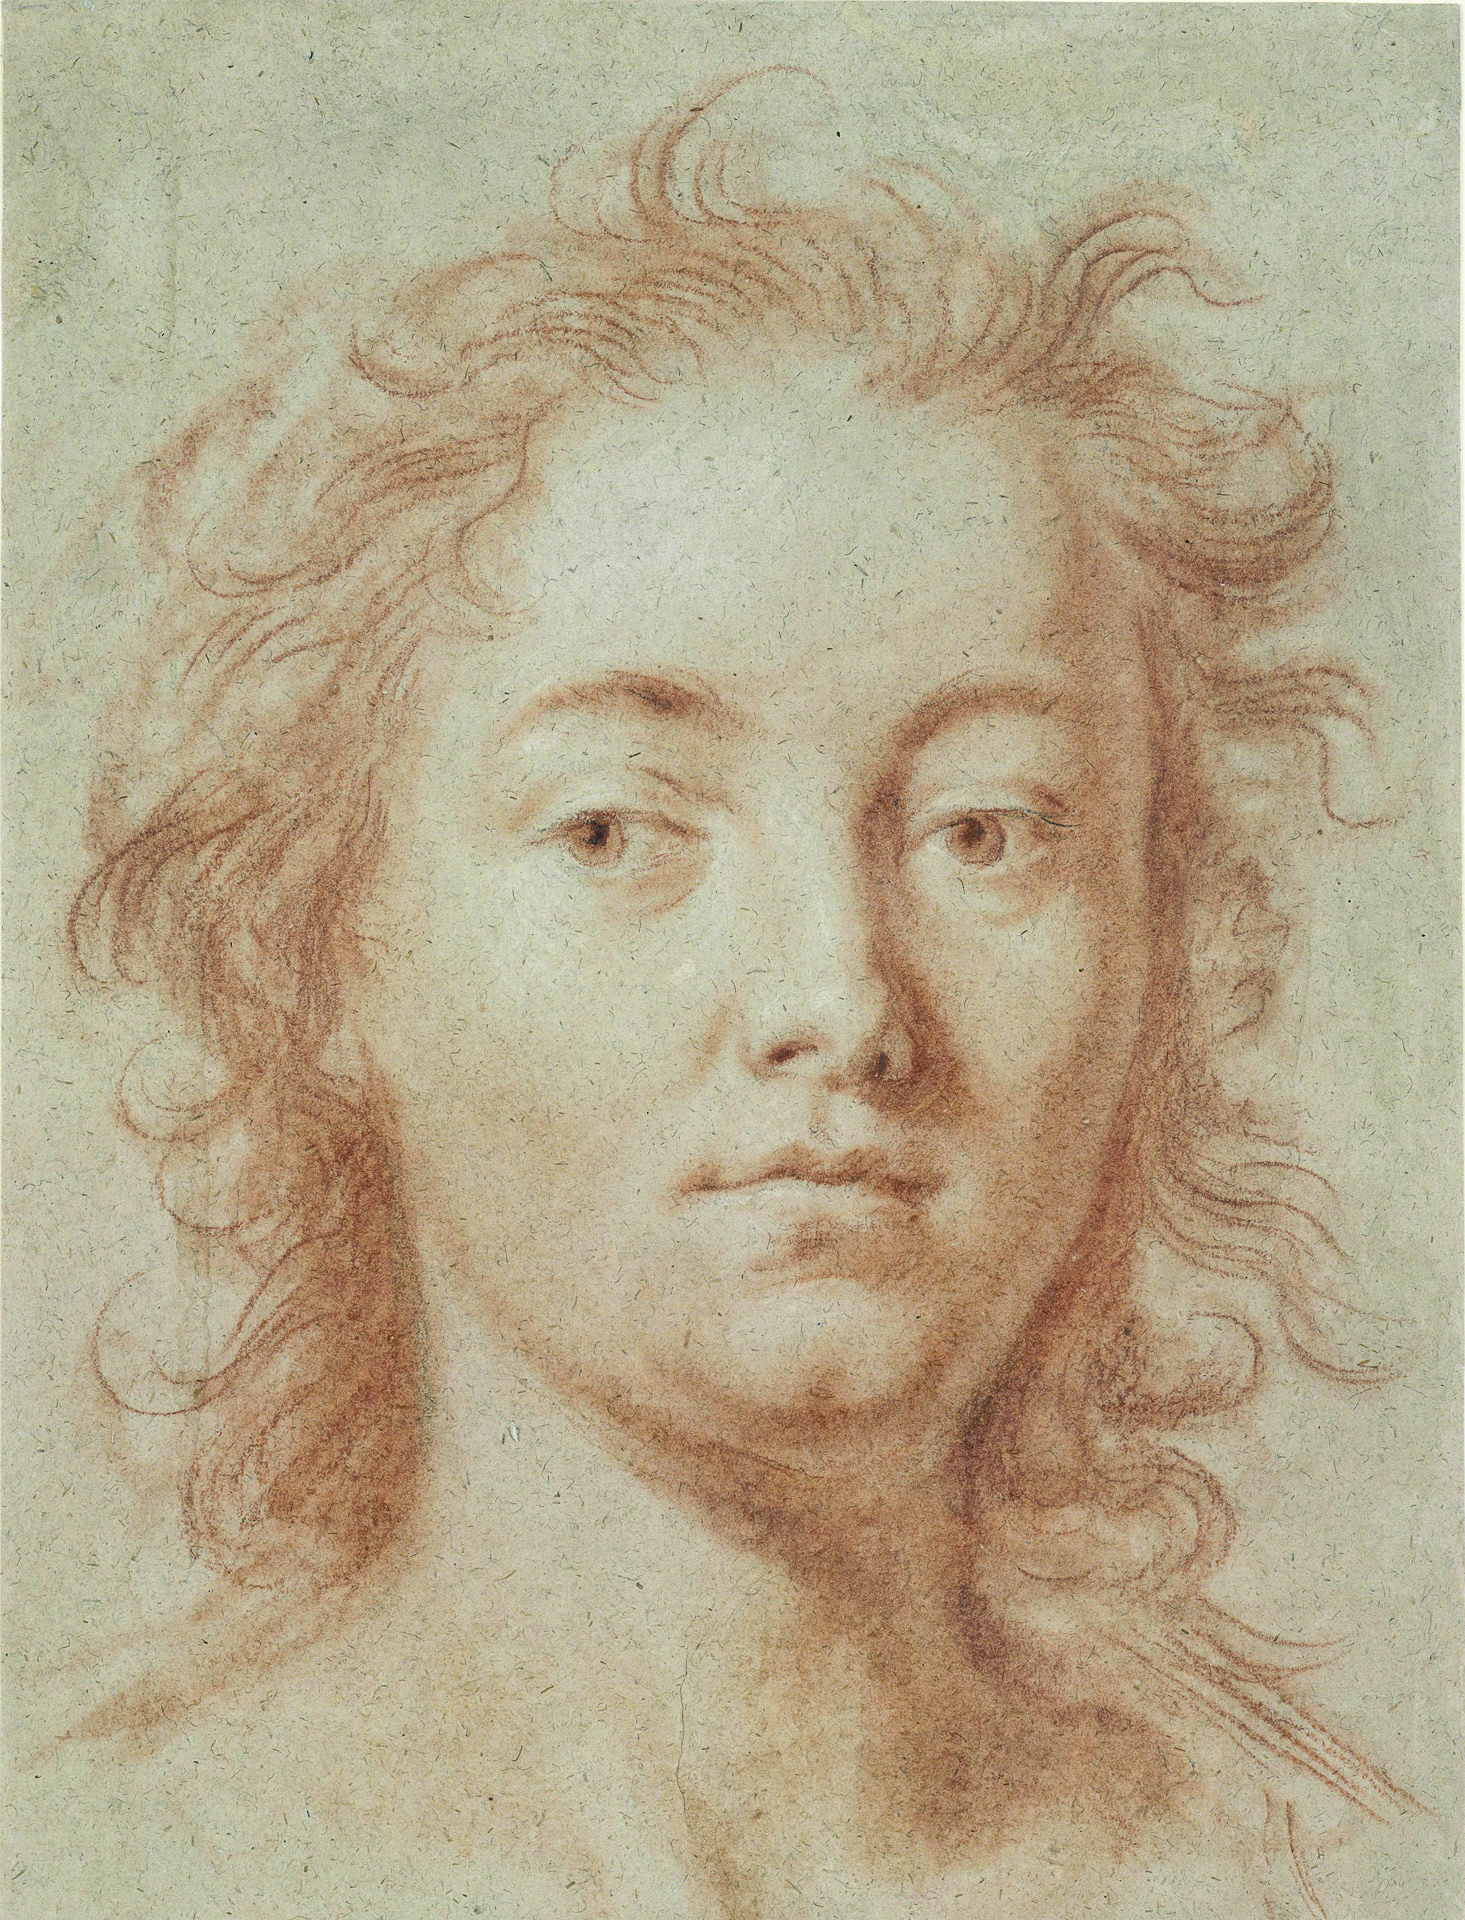 Rötel, teils verrieben oder laviert, auf über Spuren einer Skizze mit grauem Stift, auf grünlich-sandfarbenem Papier (um 1707/1708). Zu sehen ist eine junge Frau mit eindringlichem Blick und wildem Haar.